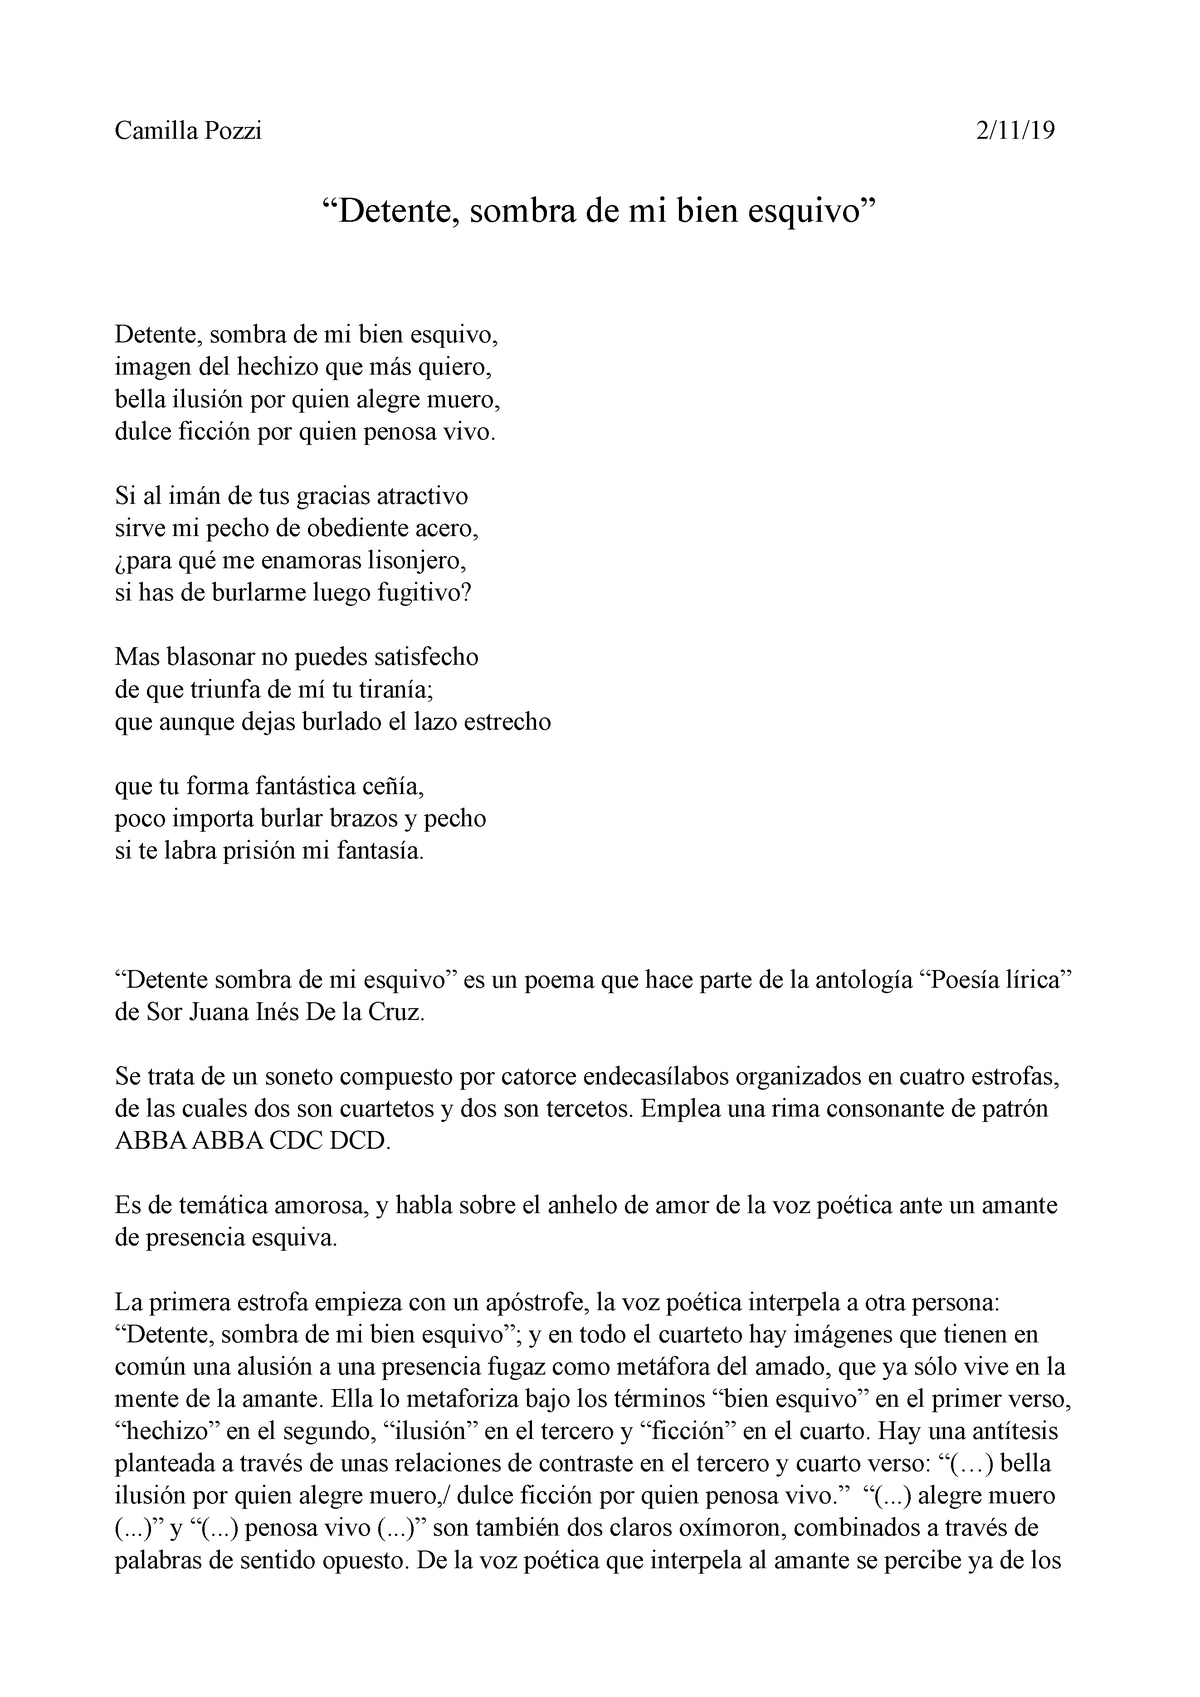 Desempleados Determinar con precisión escena PDF def Sor Juana - Camilla Pozzi 2/11/ “Detente, sombra de mi bien  esquivo” Detente, sombra de mi - Studocu